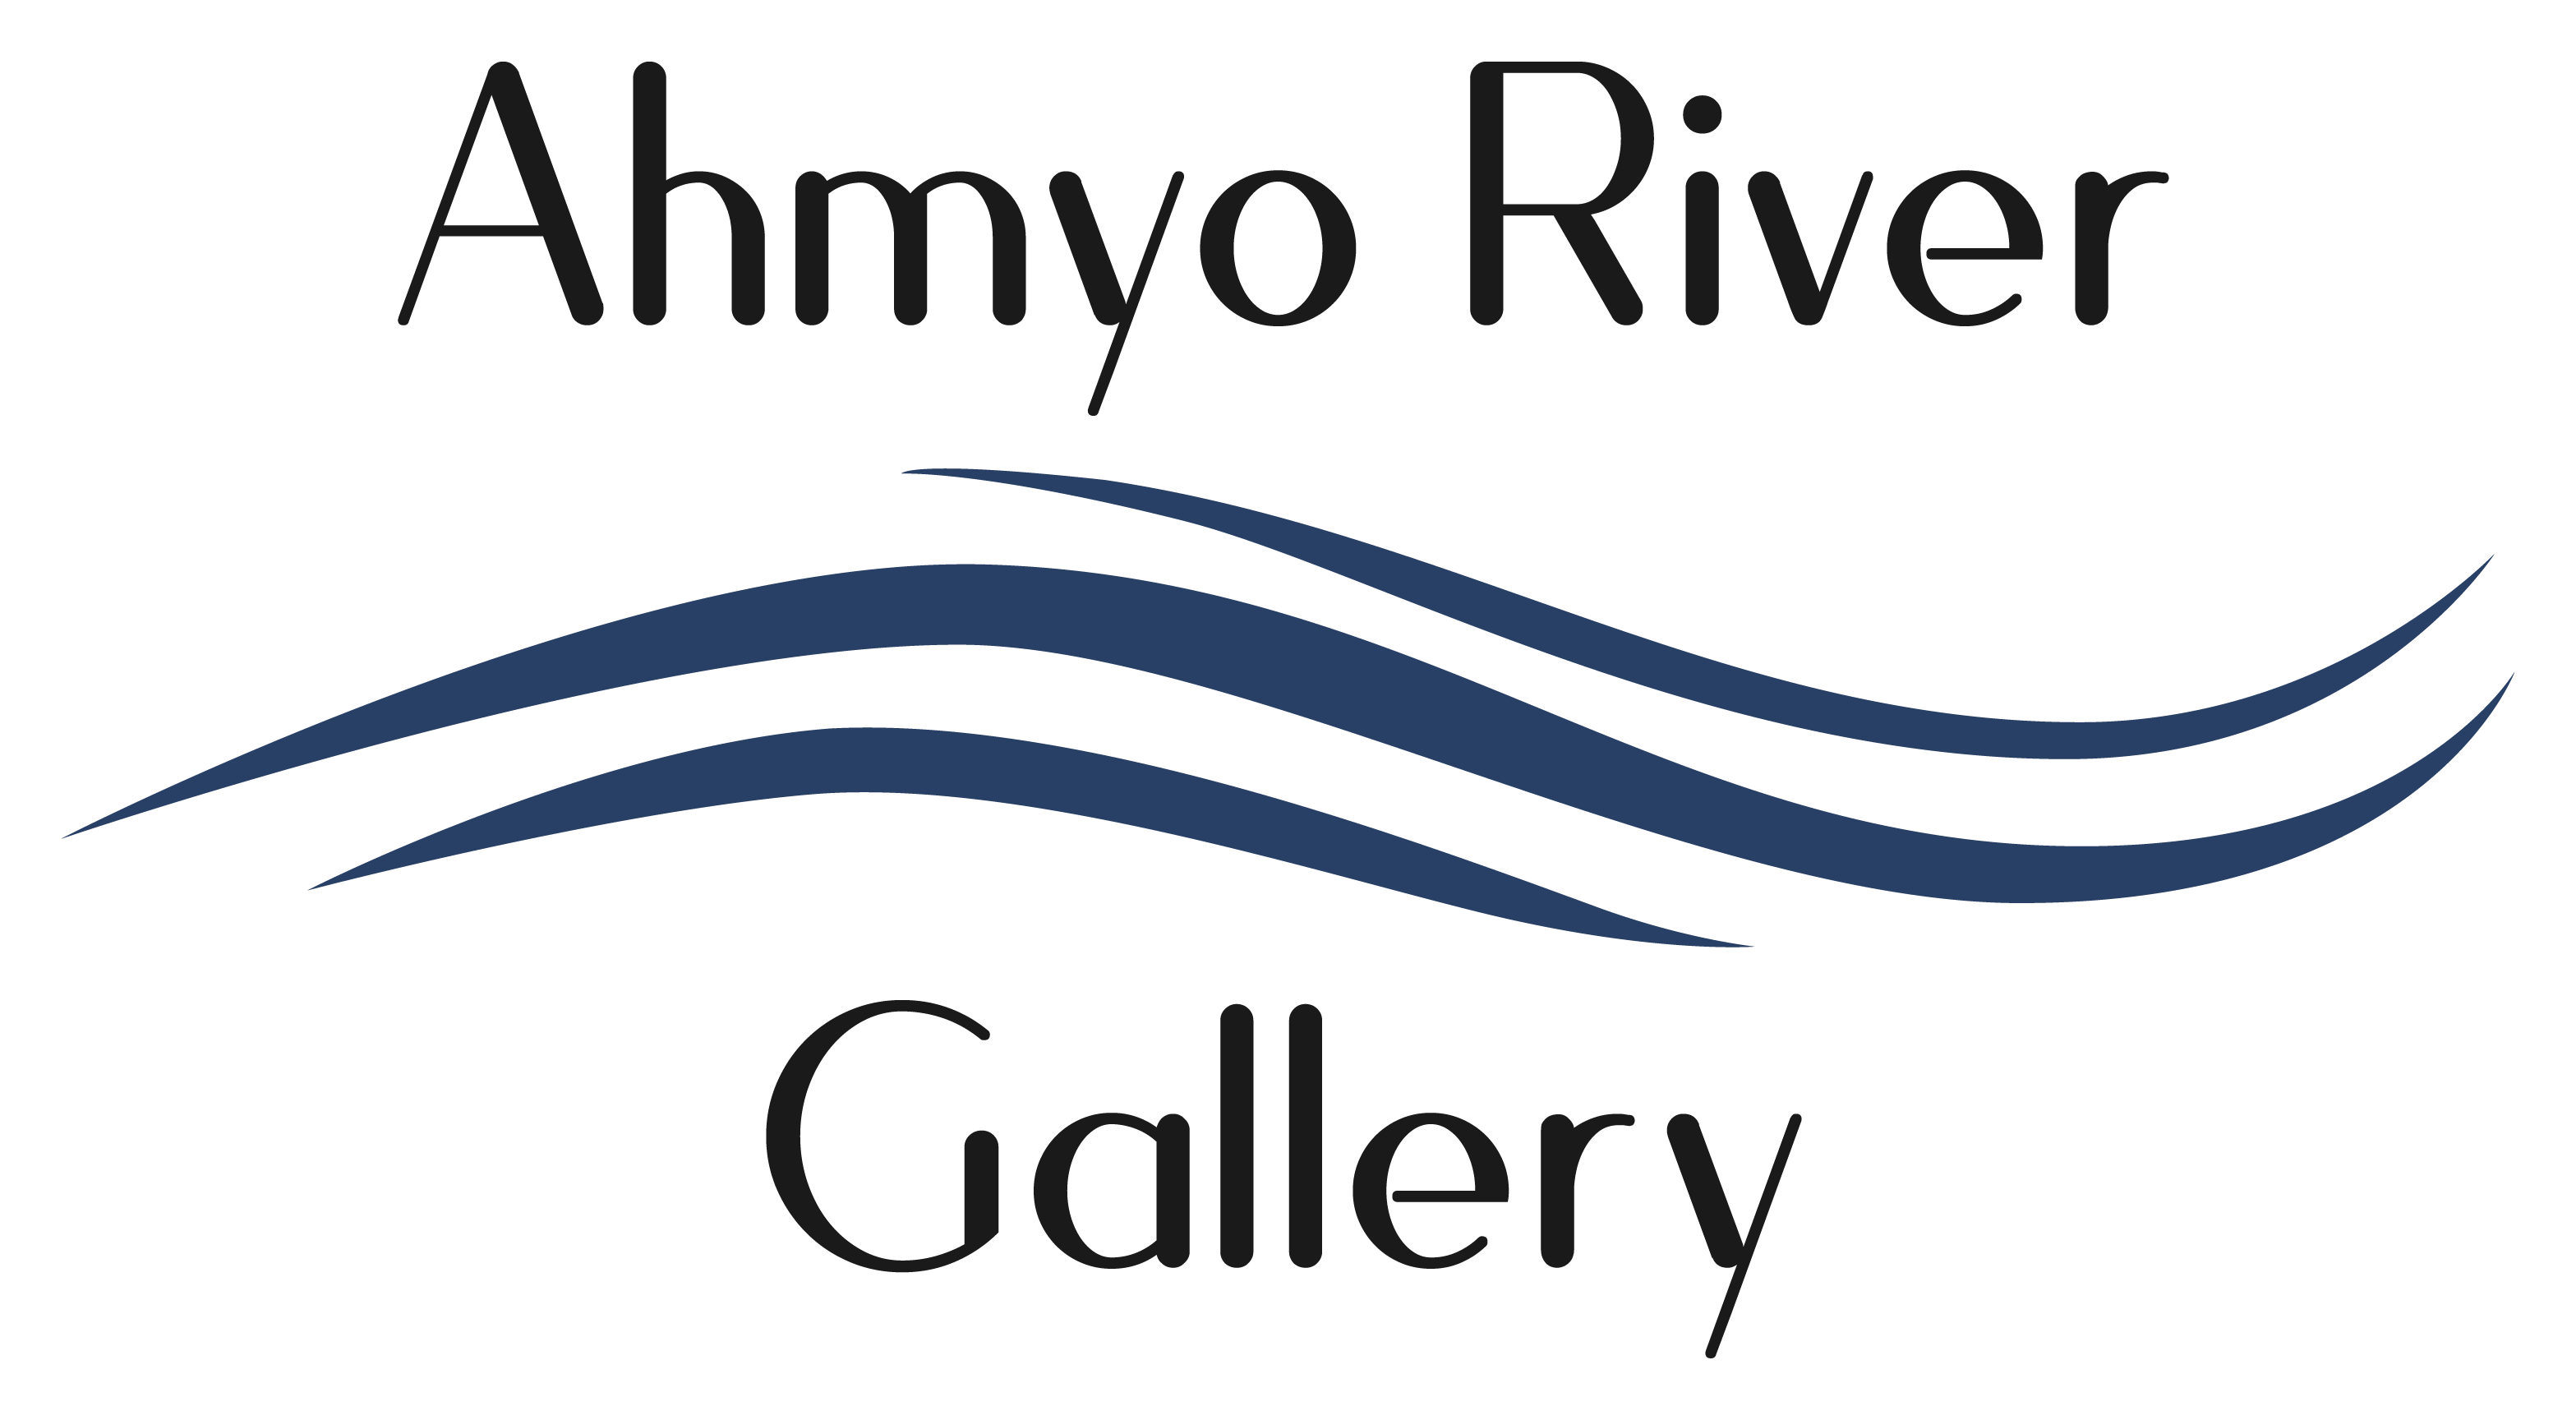 Ahmyo River Gallery